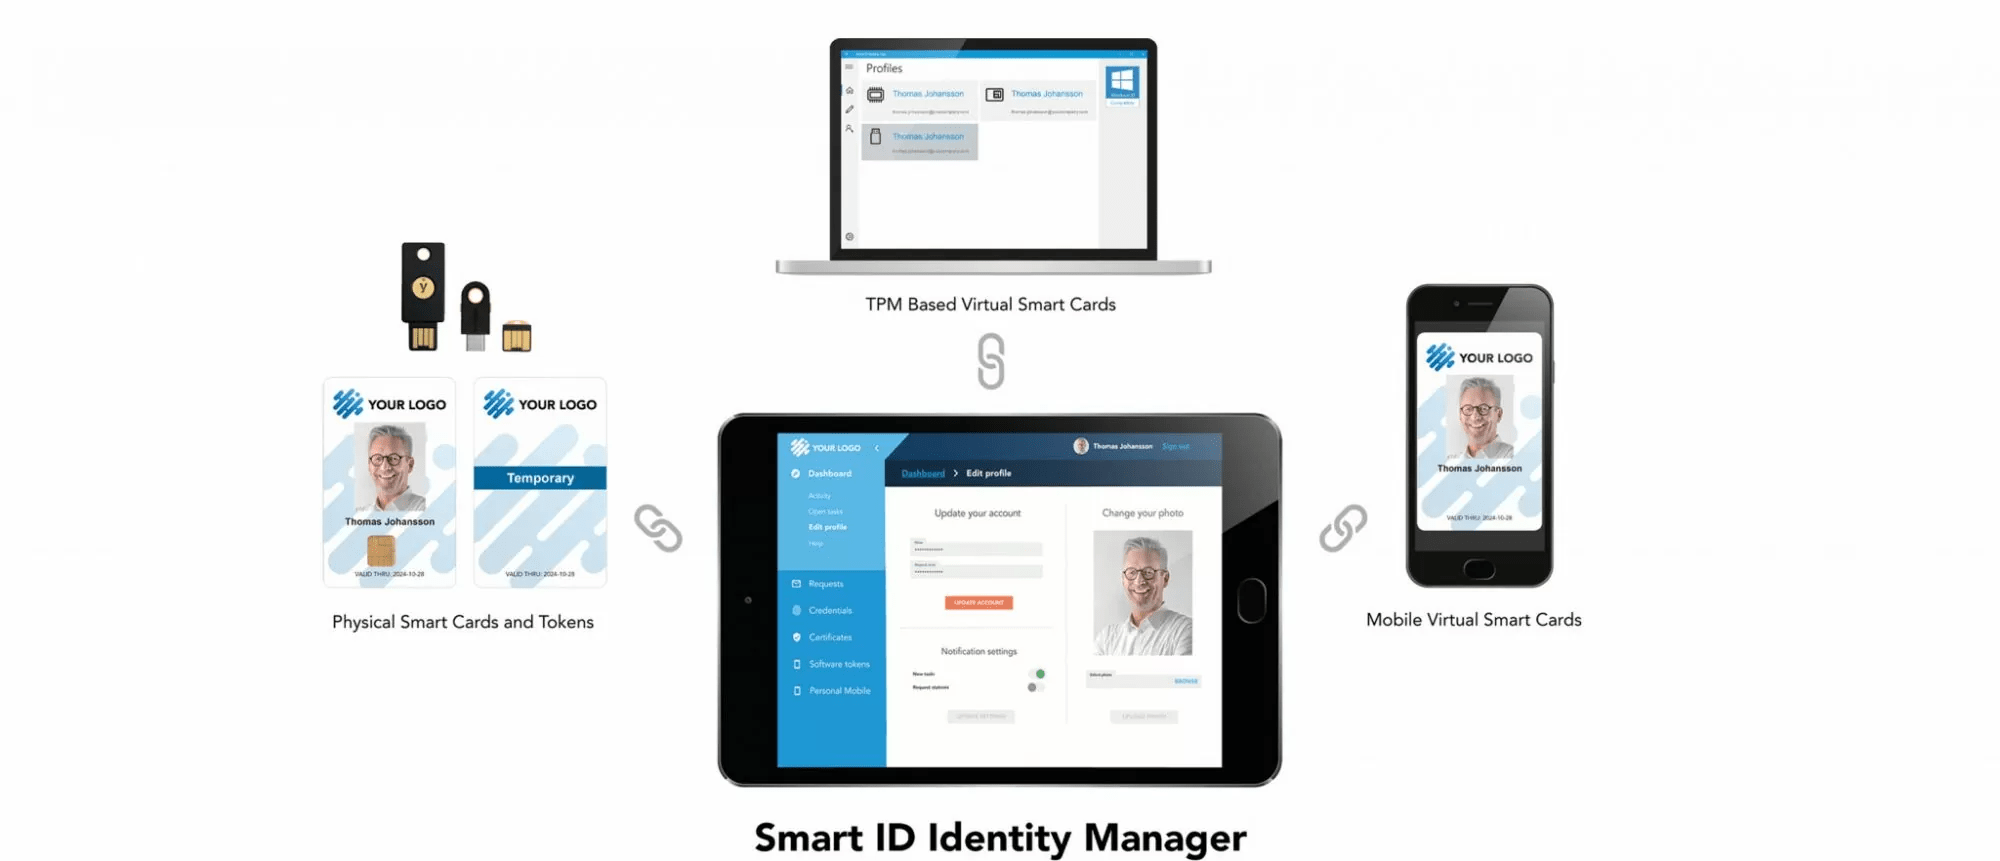 Nexus - Digital ID Management for Workforce